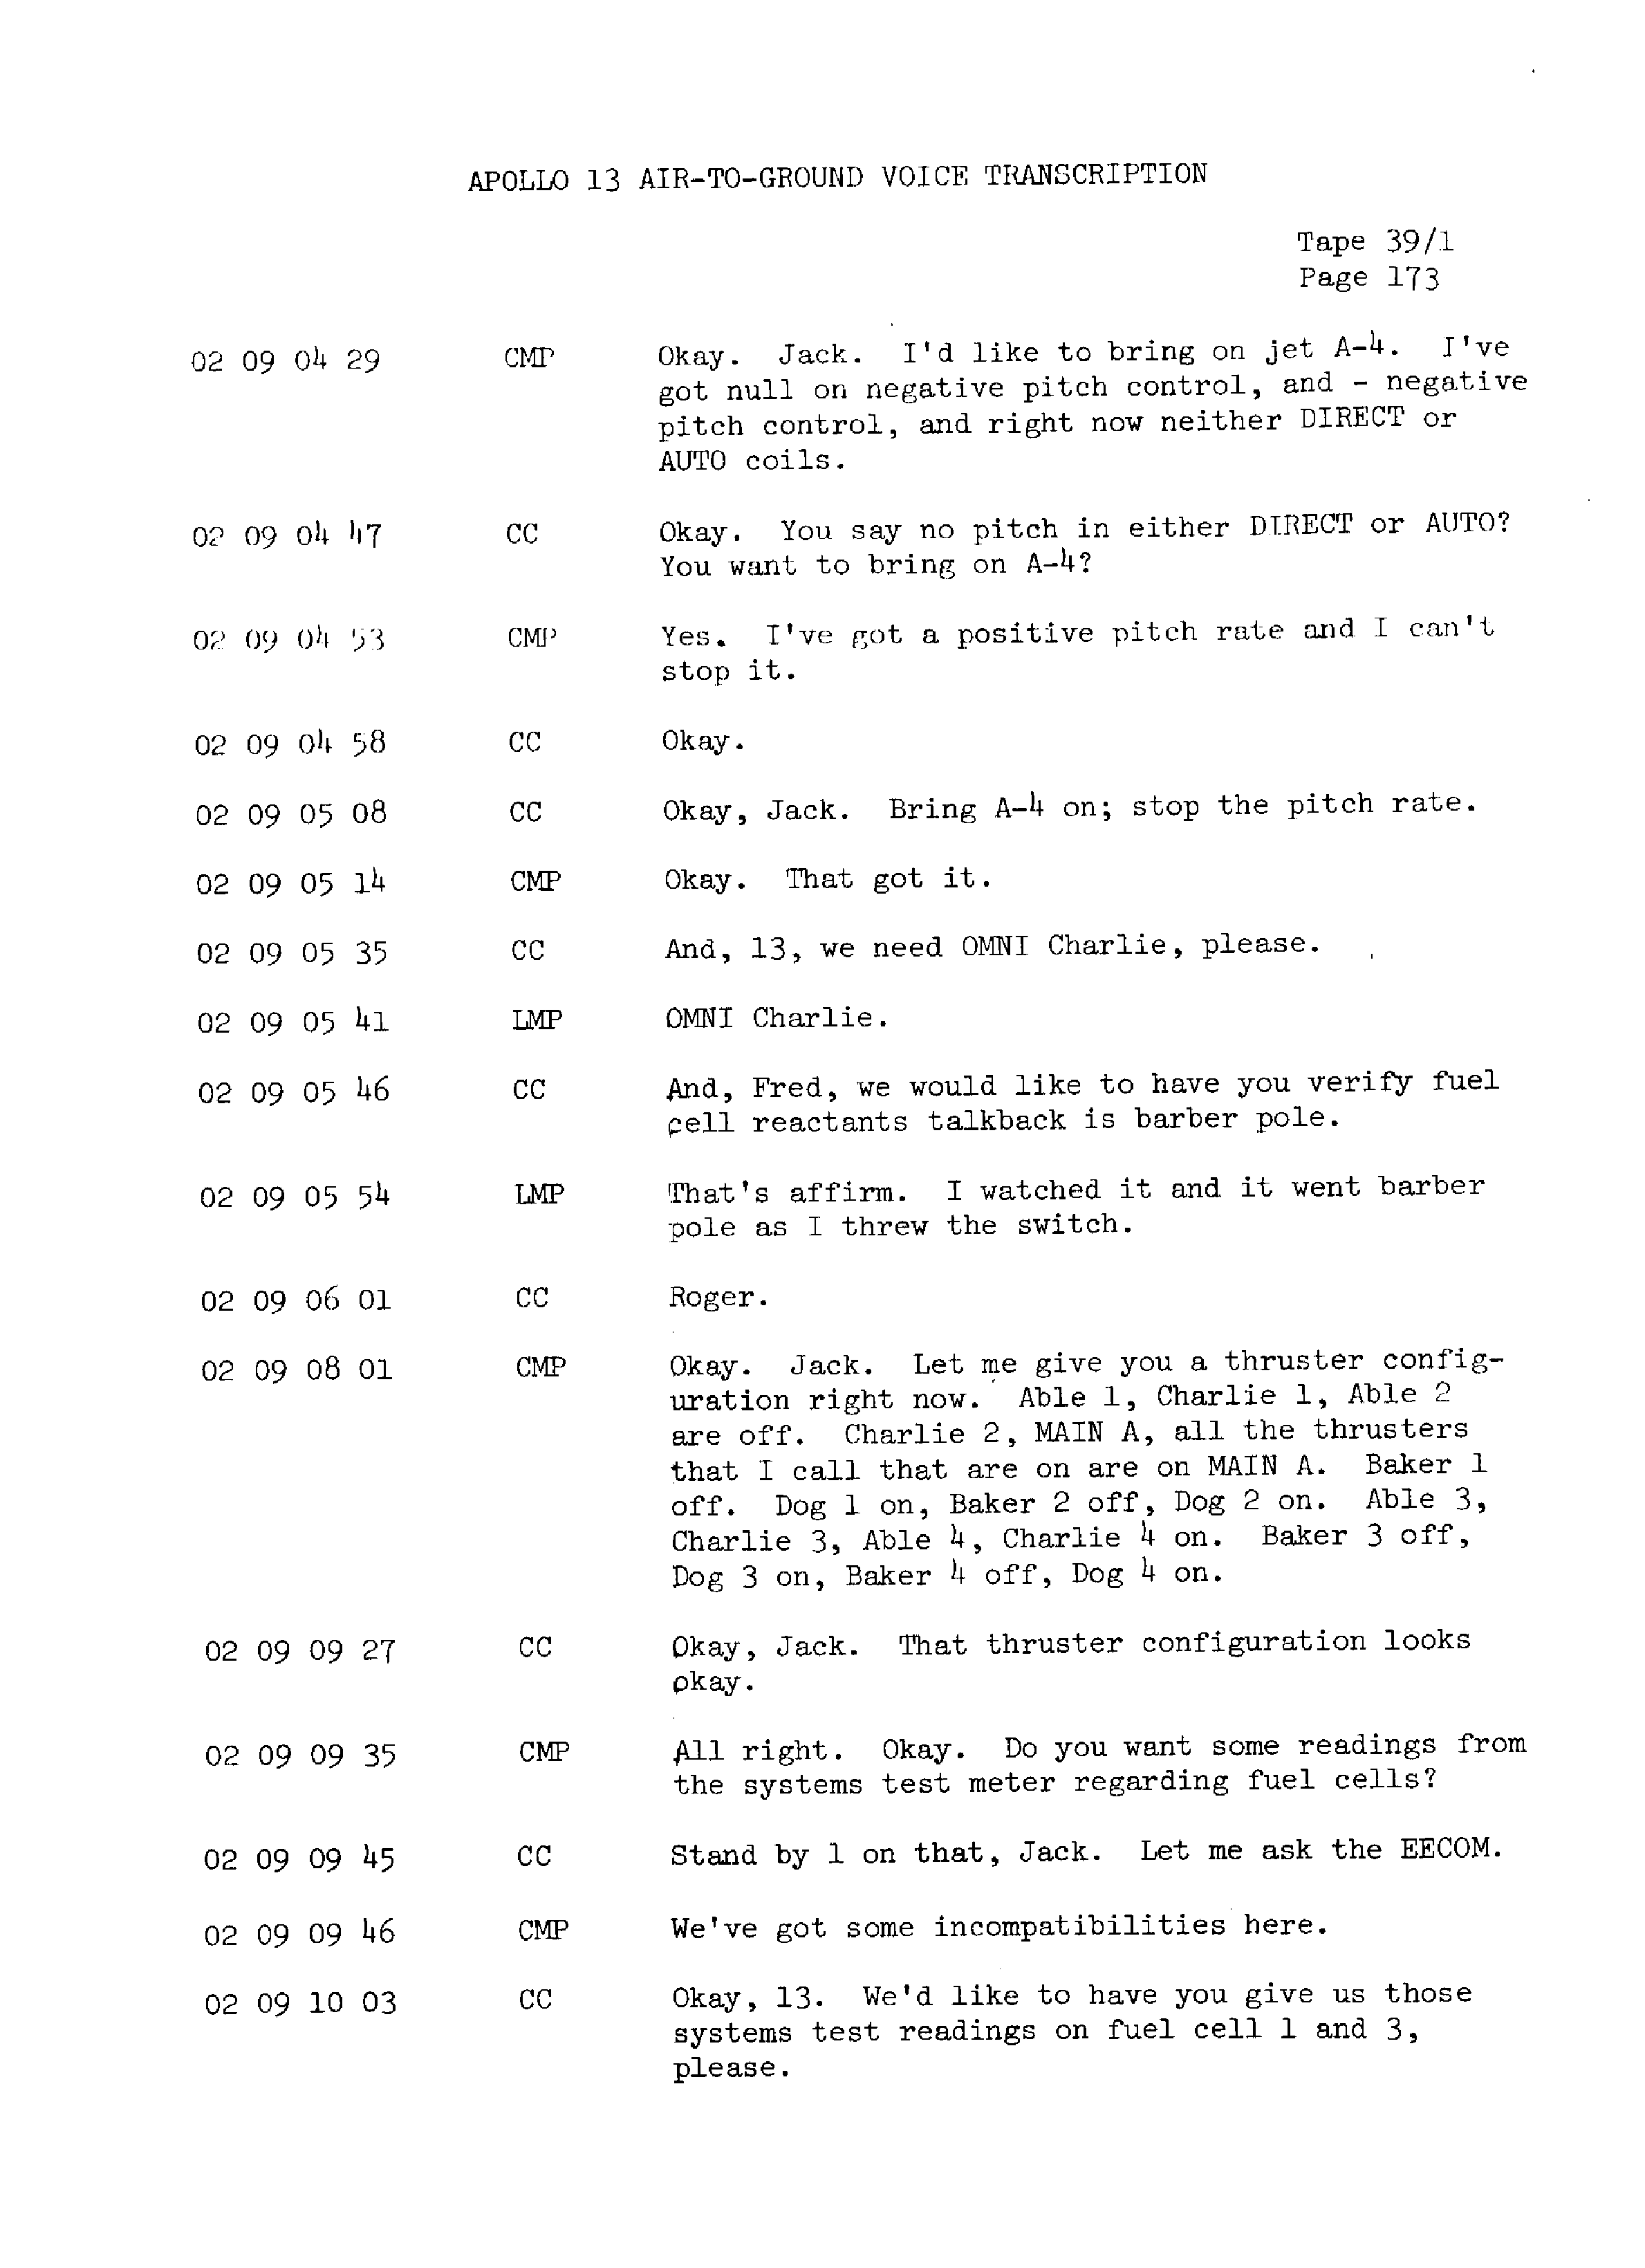 Page 180 of Apollo 13’s original transcript